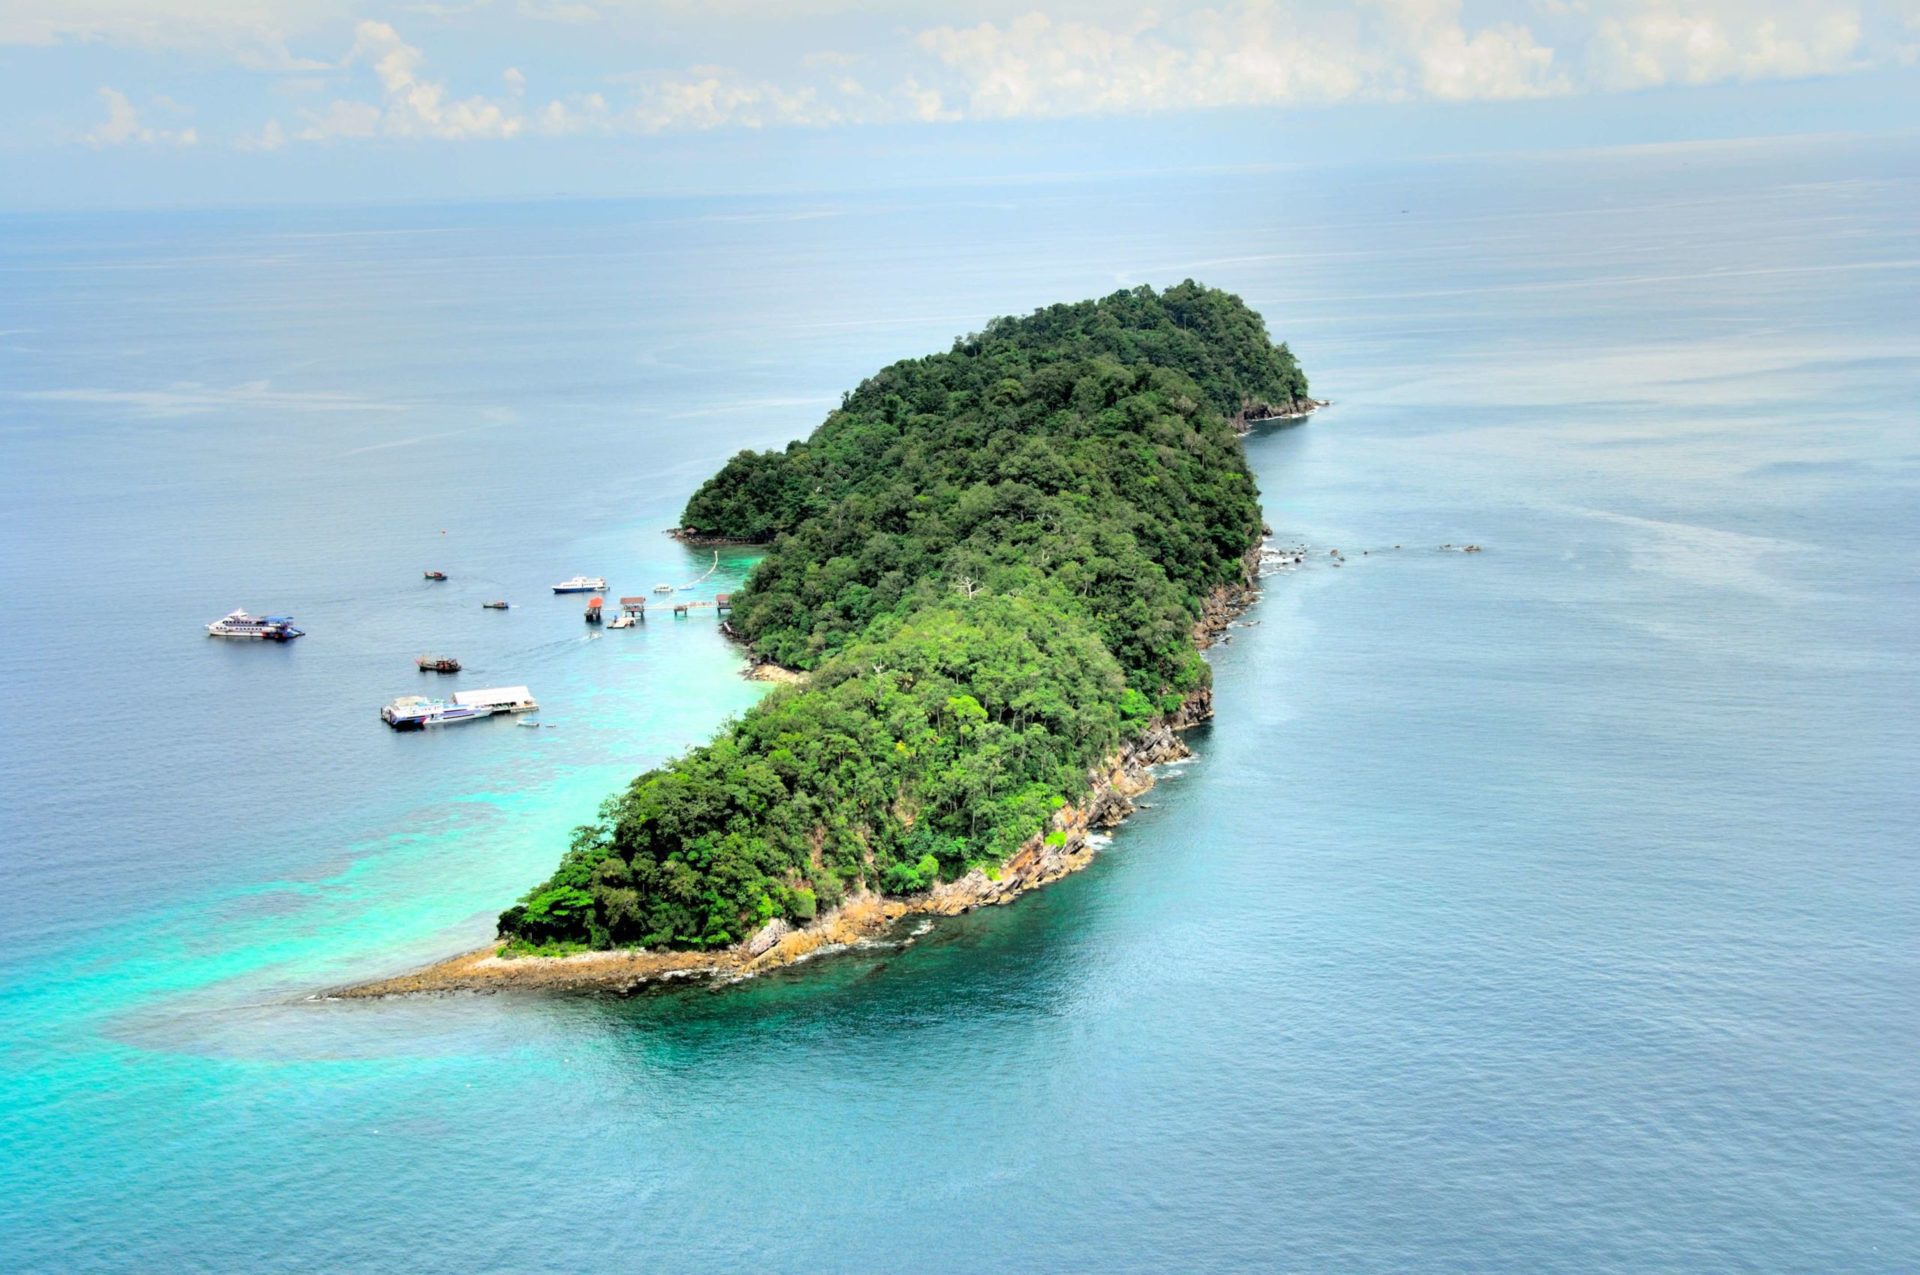 Stunning Pulau Payar has Reopened